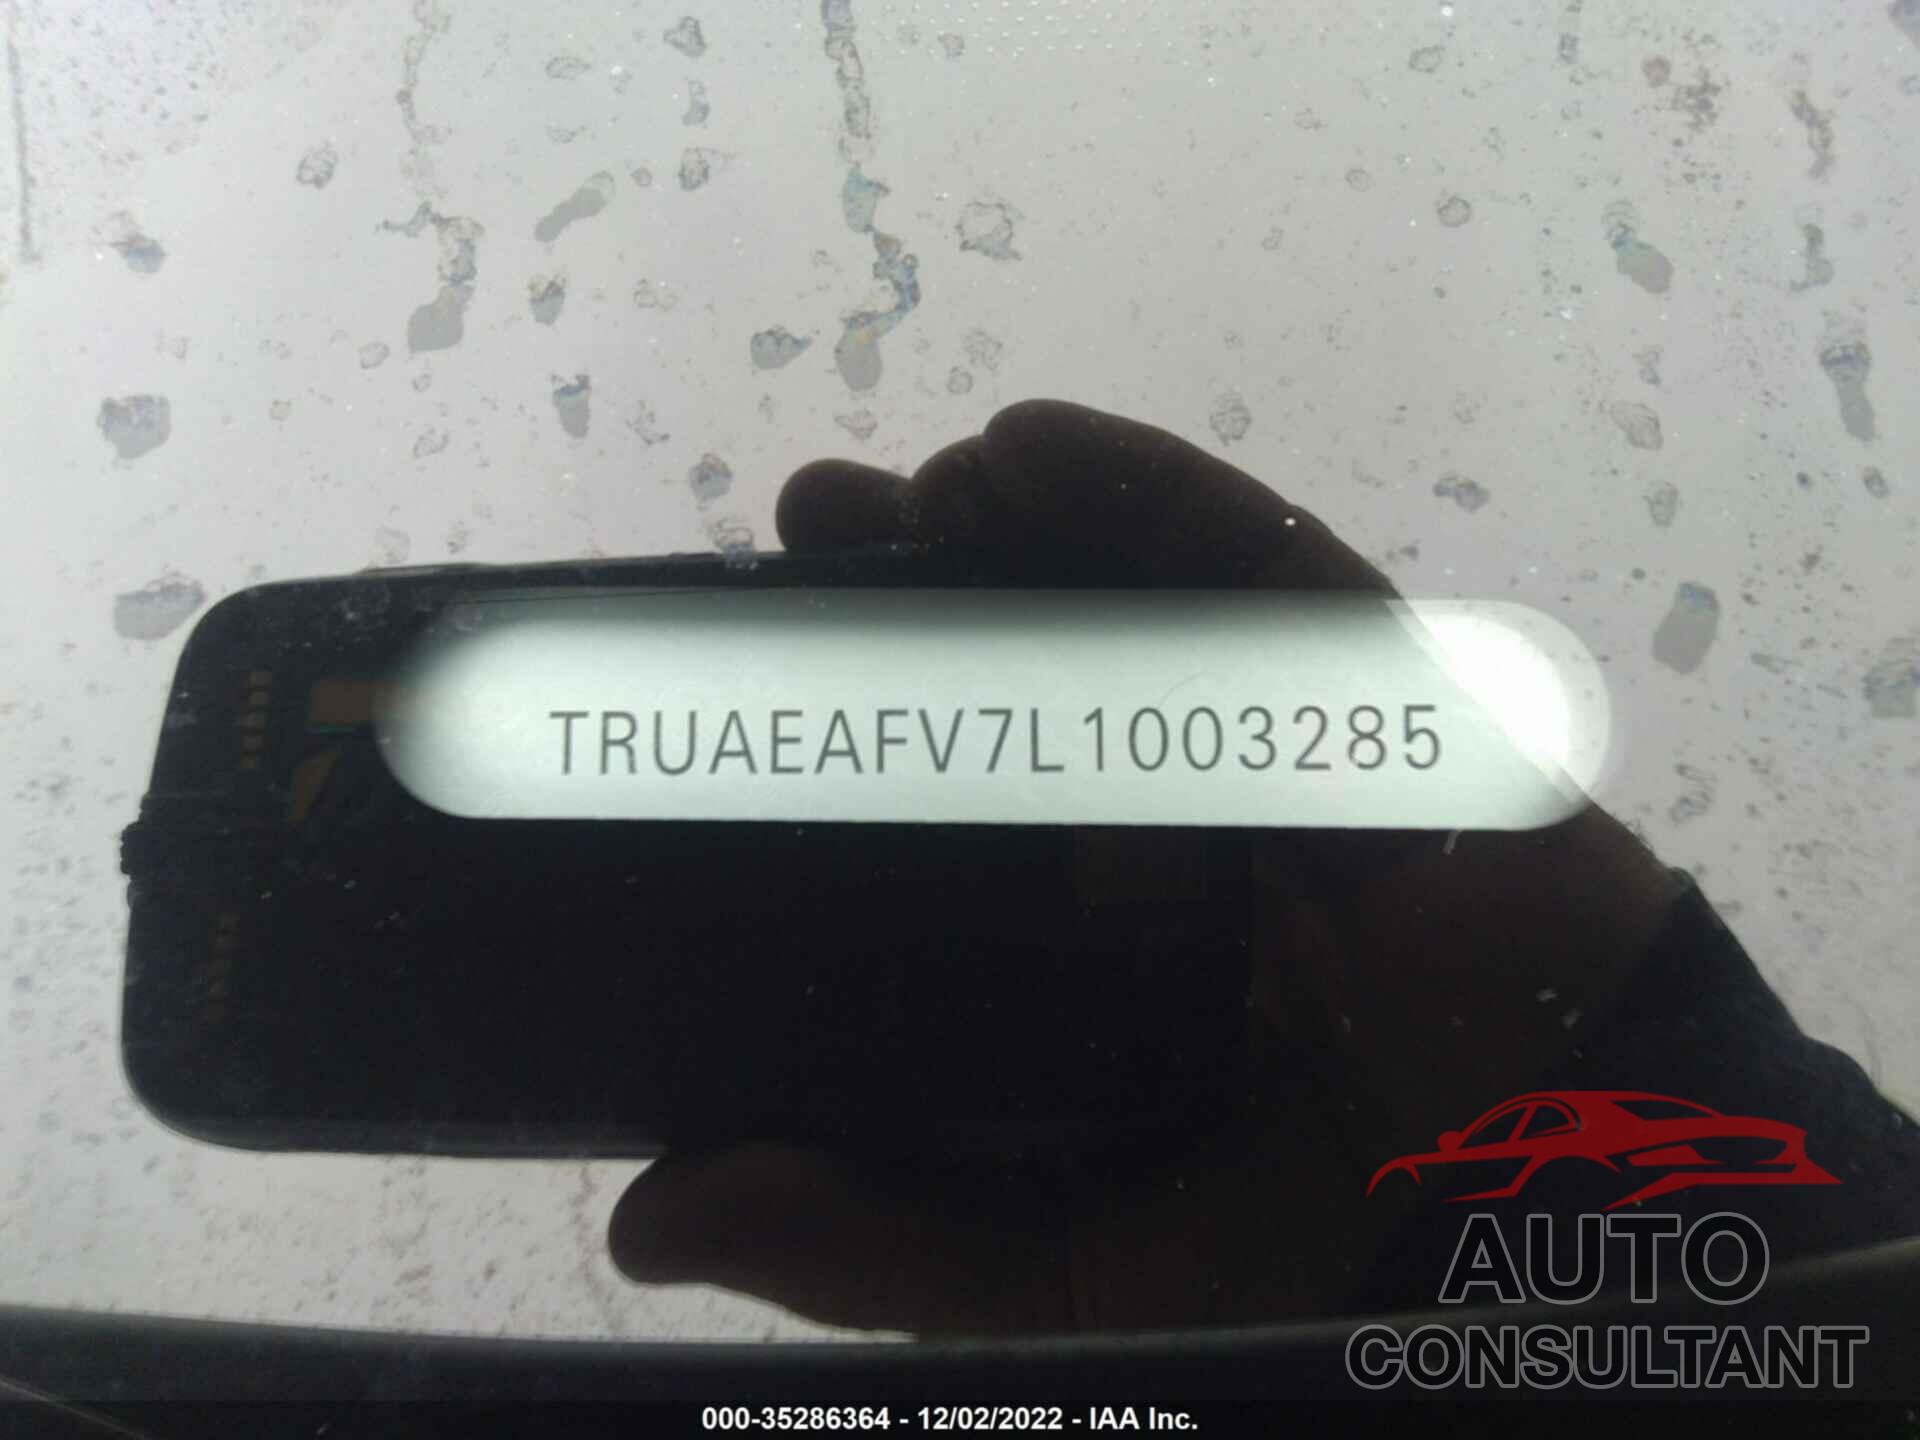 AUDI TT COUPE 2020 - TRUAEAFV7L1003285